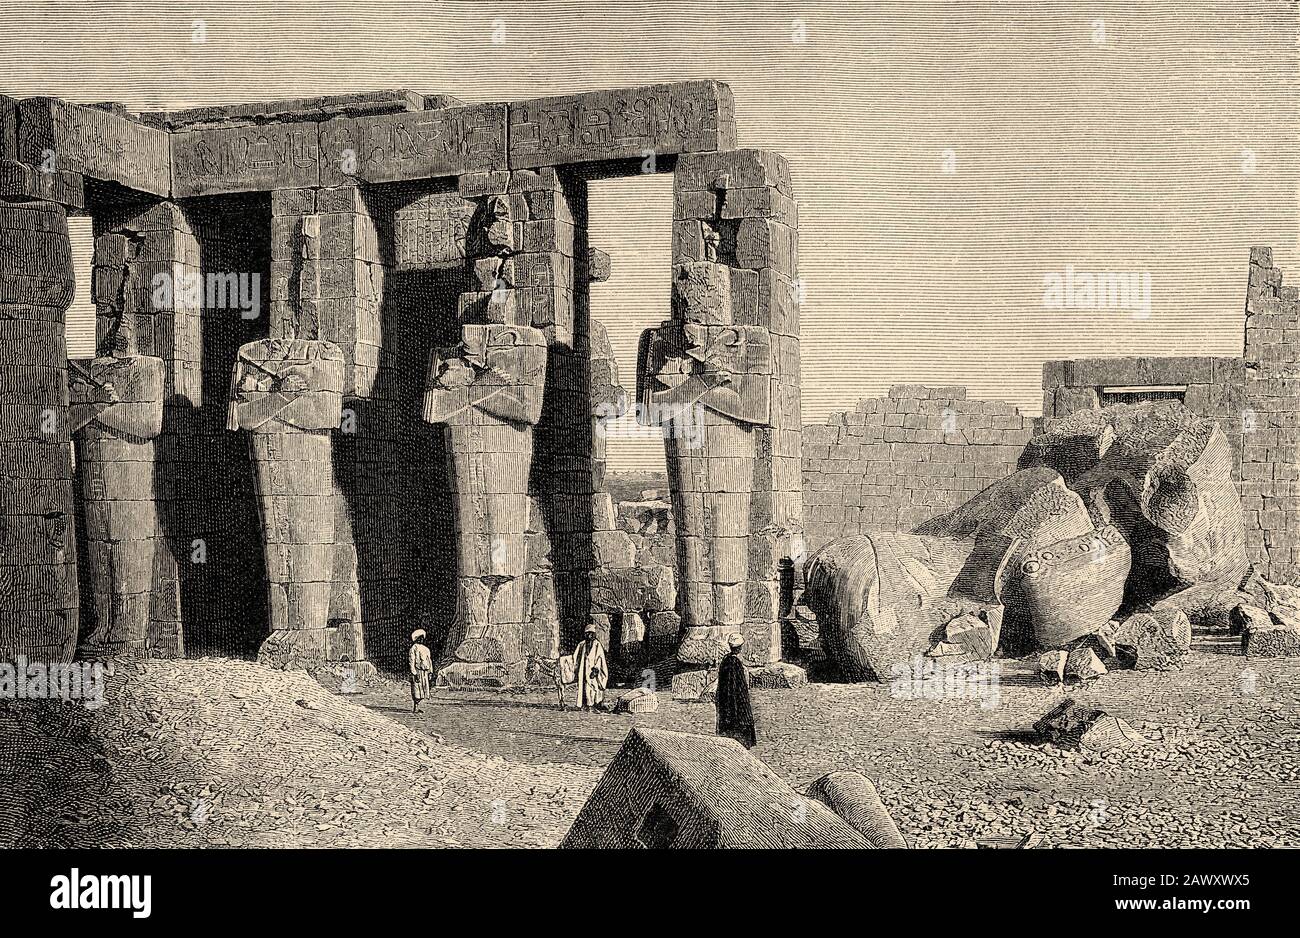 Ramesseum. Edifici Ramses, monumenti a Tebe, antico impero egiziano. Egitto. Vecchia illustrazione dell'incisione dal libro Storia universale da Oscar Foto Stock